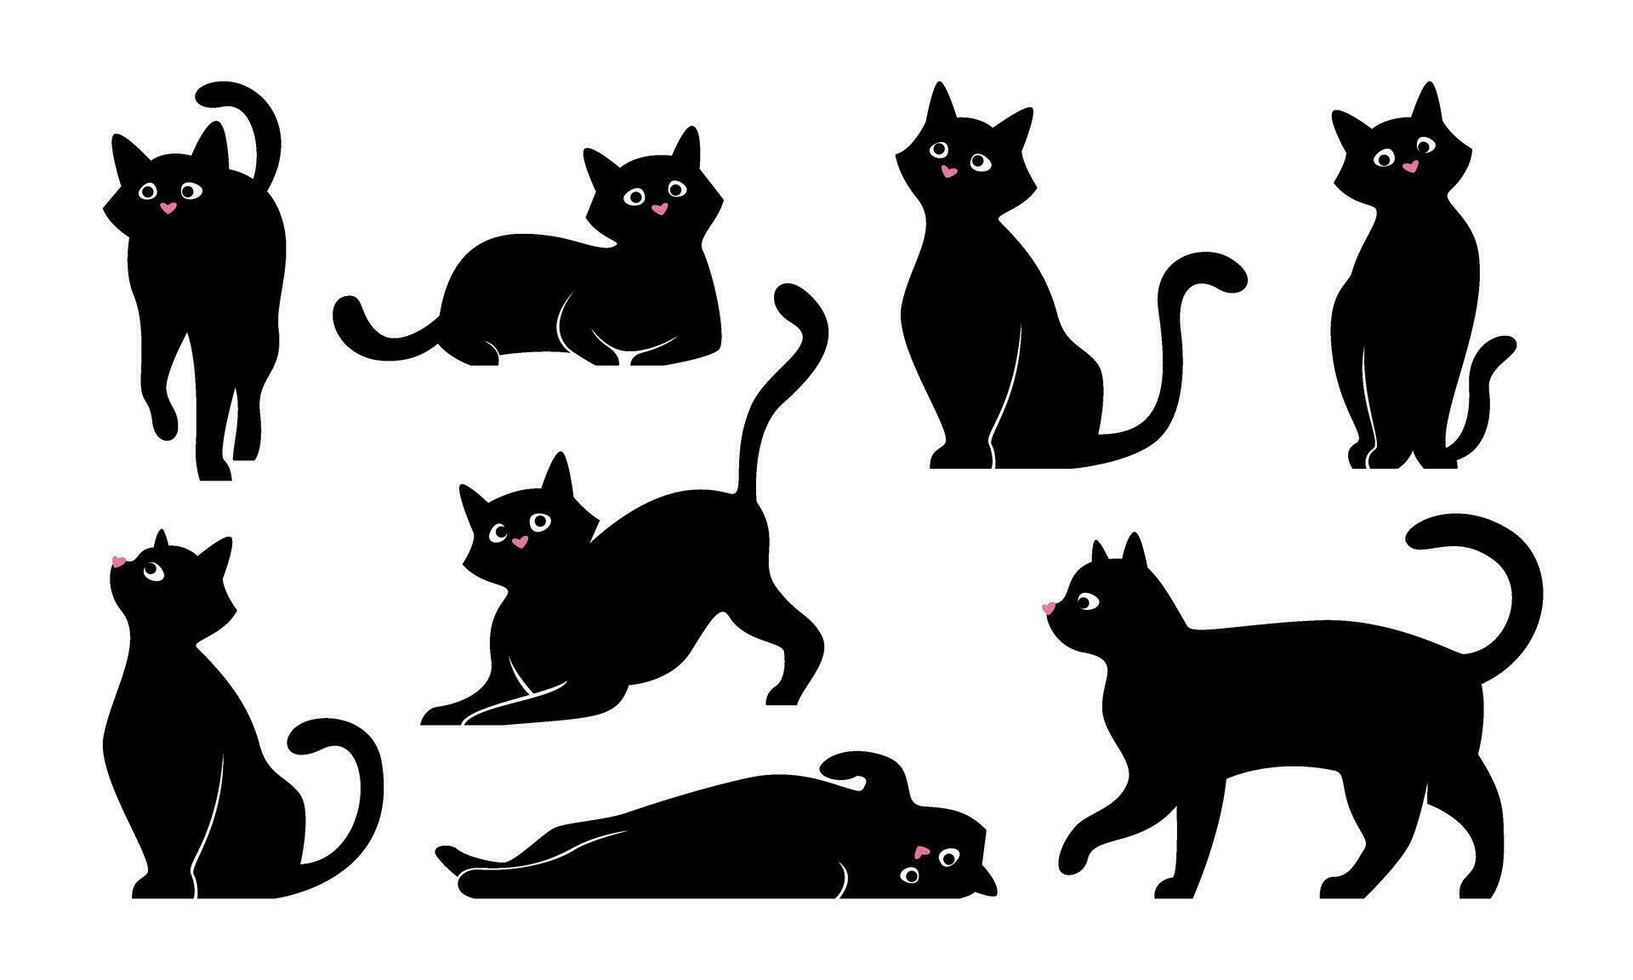 Varianten von Katze Posen. Vektor einstellen von schwarz Katze, Katzen, Illustration isoliert auf Weiß.